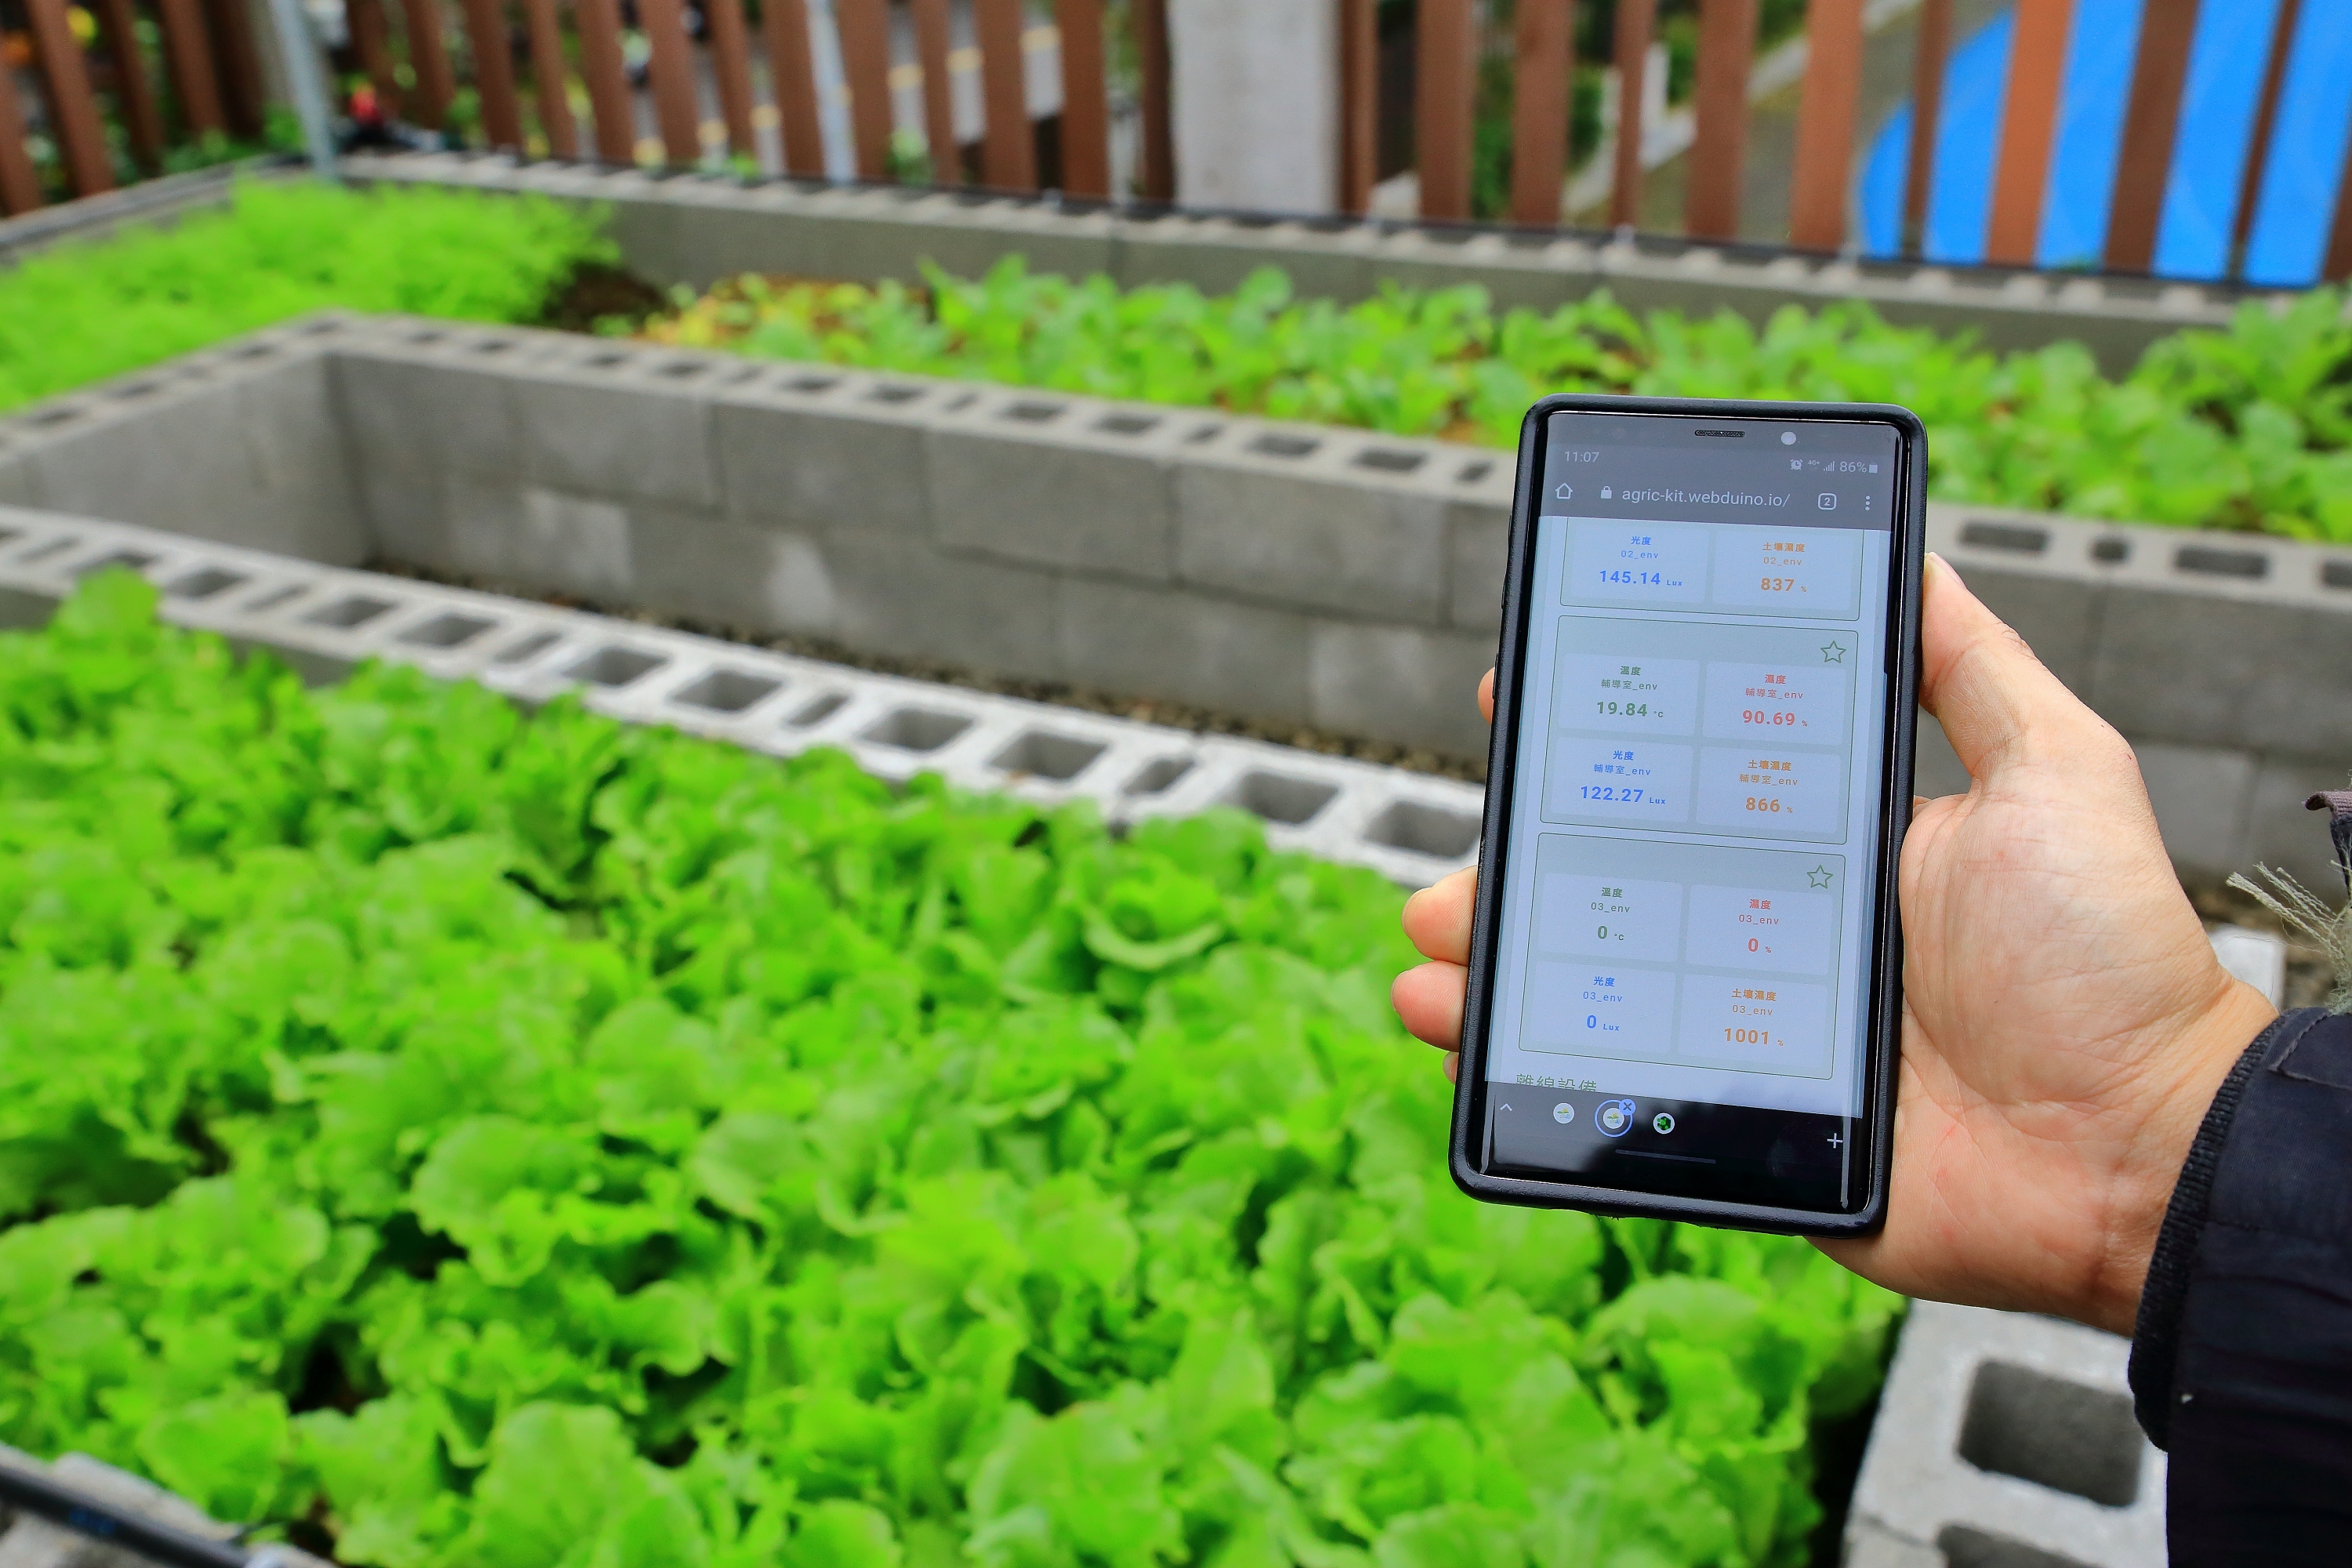 新北市永和國中校園農場運用智慧植栽照護管理系統 進行農場遠距澆水監測管理。